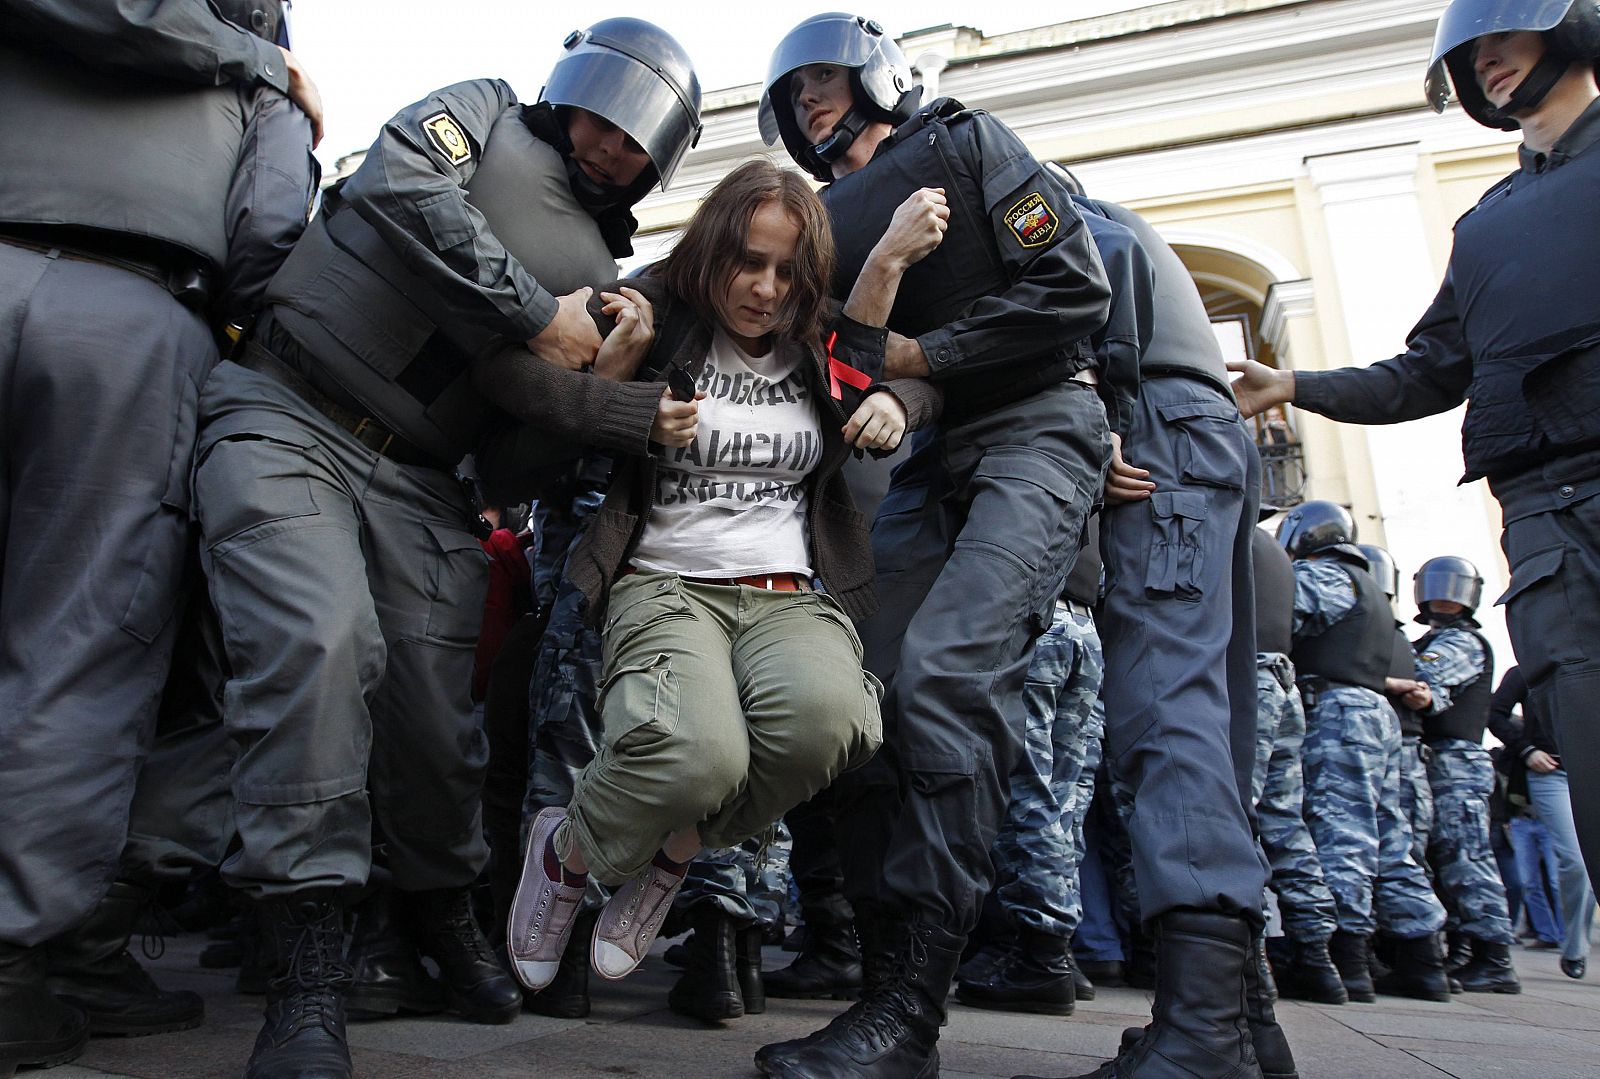 La Policía rusa detiene a una activista durante la protesta para reivindicar el artículo 31 de la Constitución (derecho de reunión), en San Petersburgo